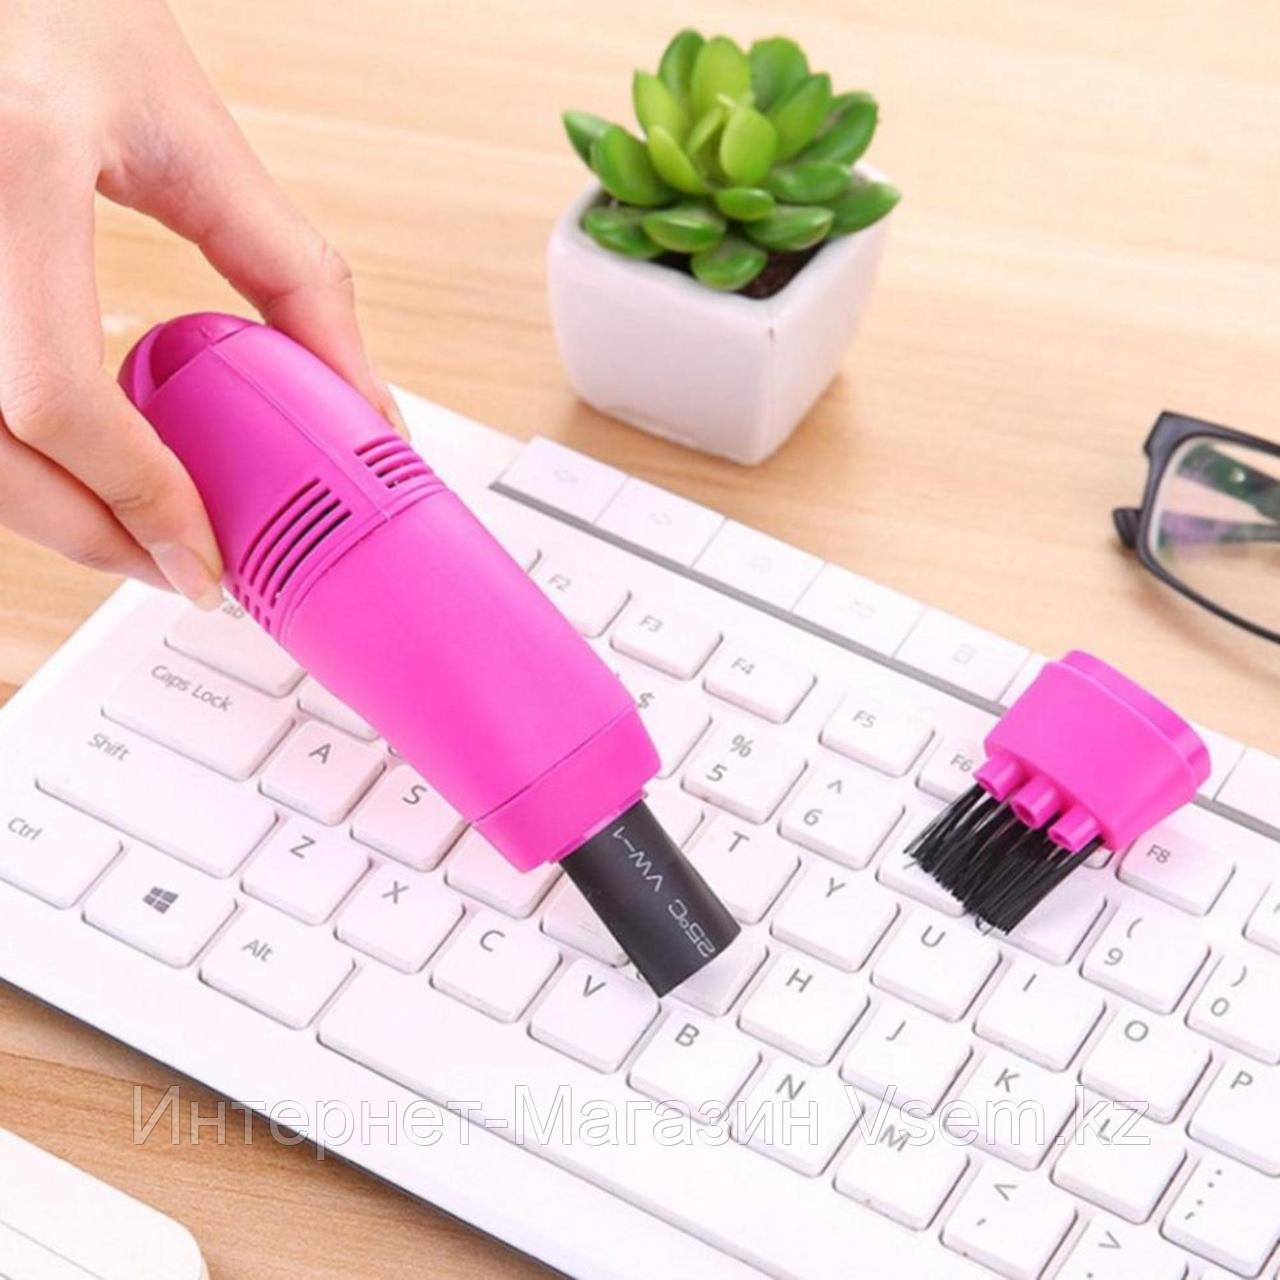 Мини USB пылесос для клавиатуры, цвет фиолетовый